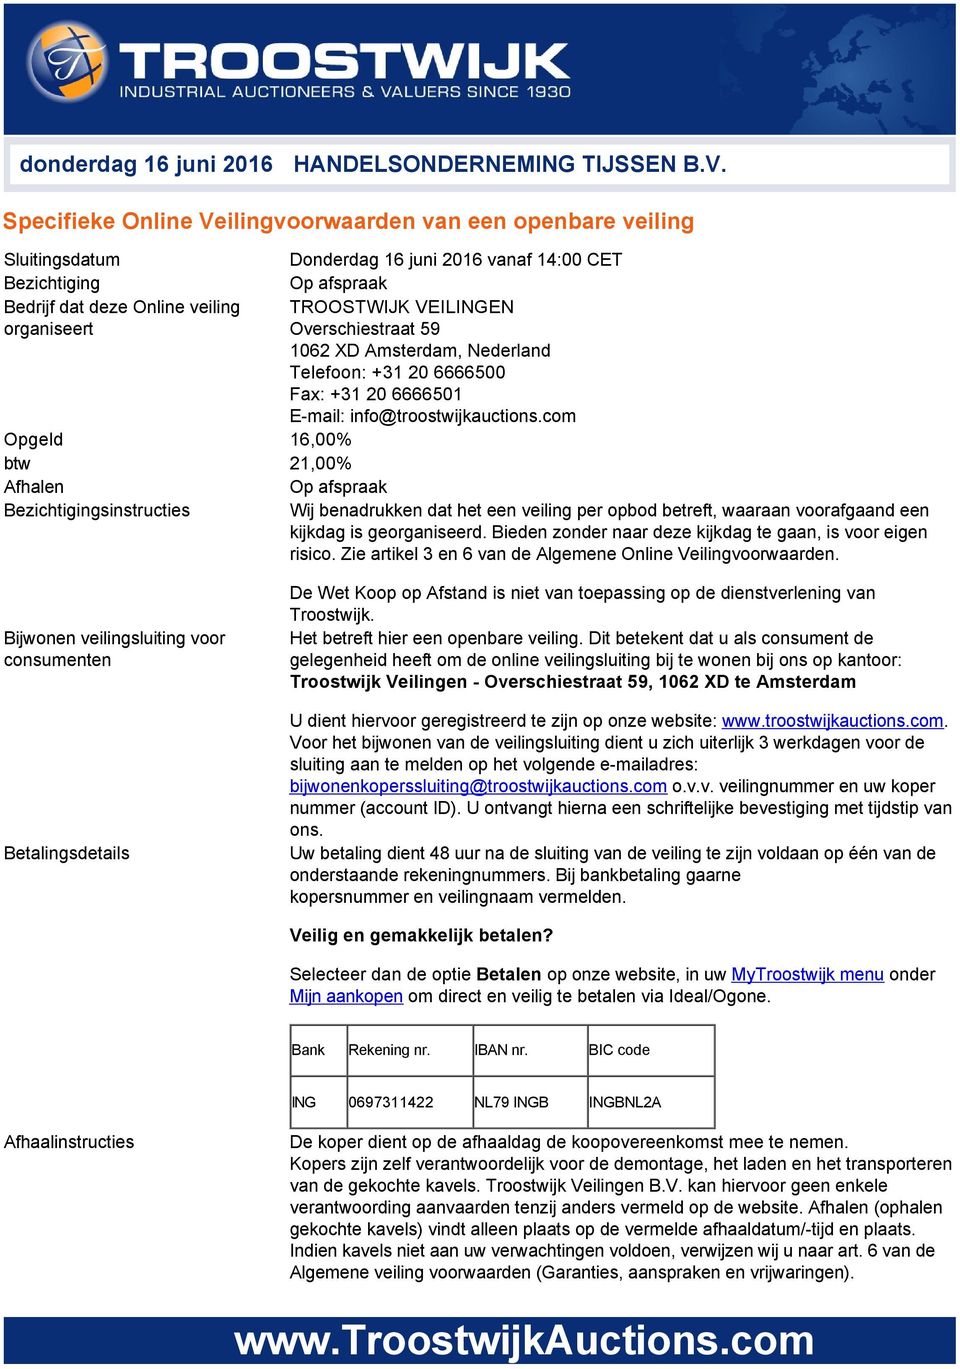 organiseert Overschiestraat 59 1062 XD Amsterdam, Nederland Telefoon: +31 20 6666500 Fax: +31 20 6666501 E mail: info@troostwijkauctions.